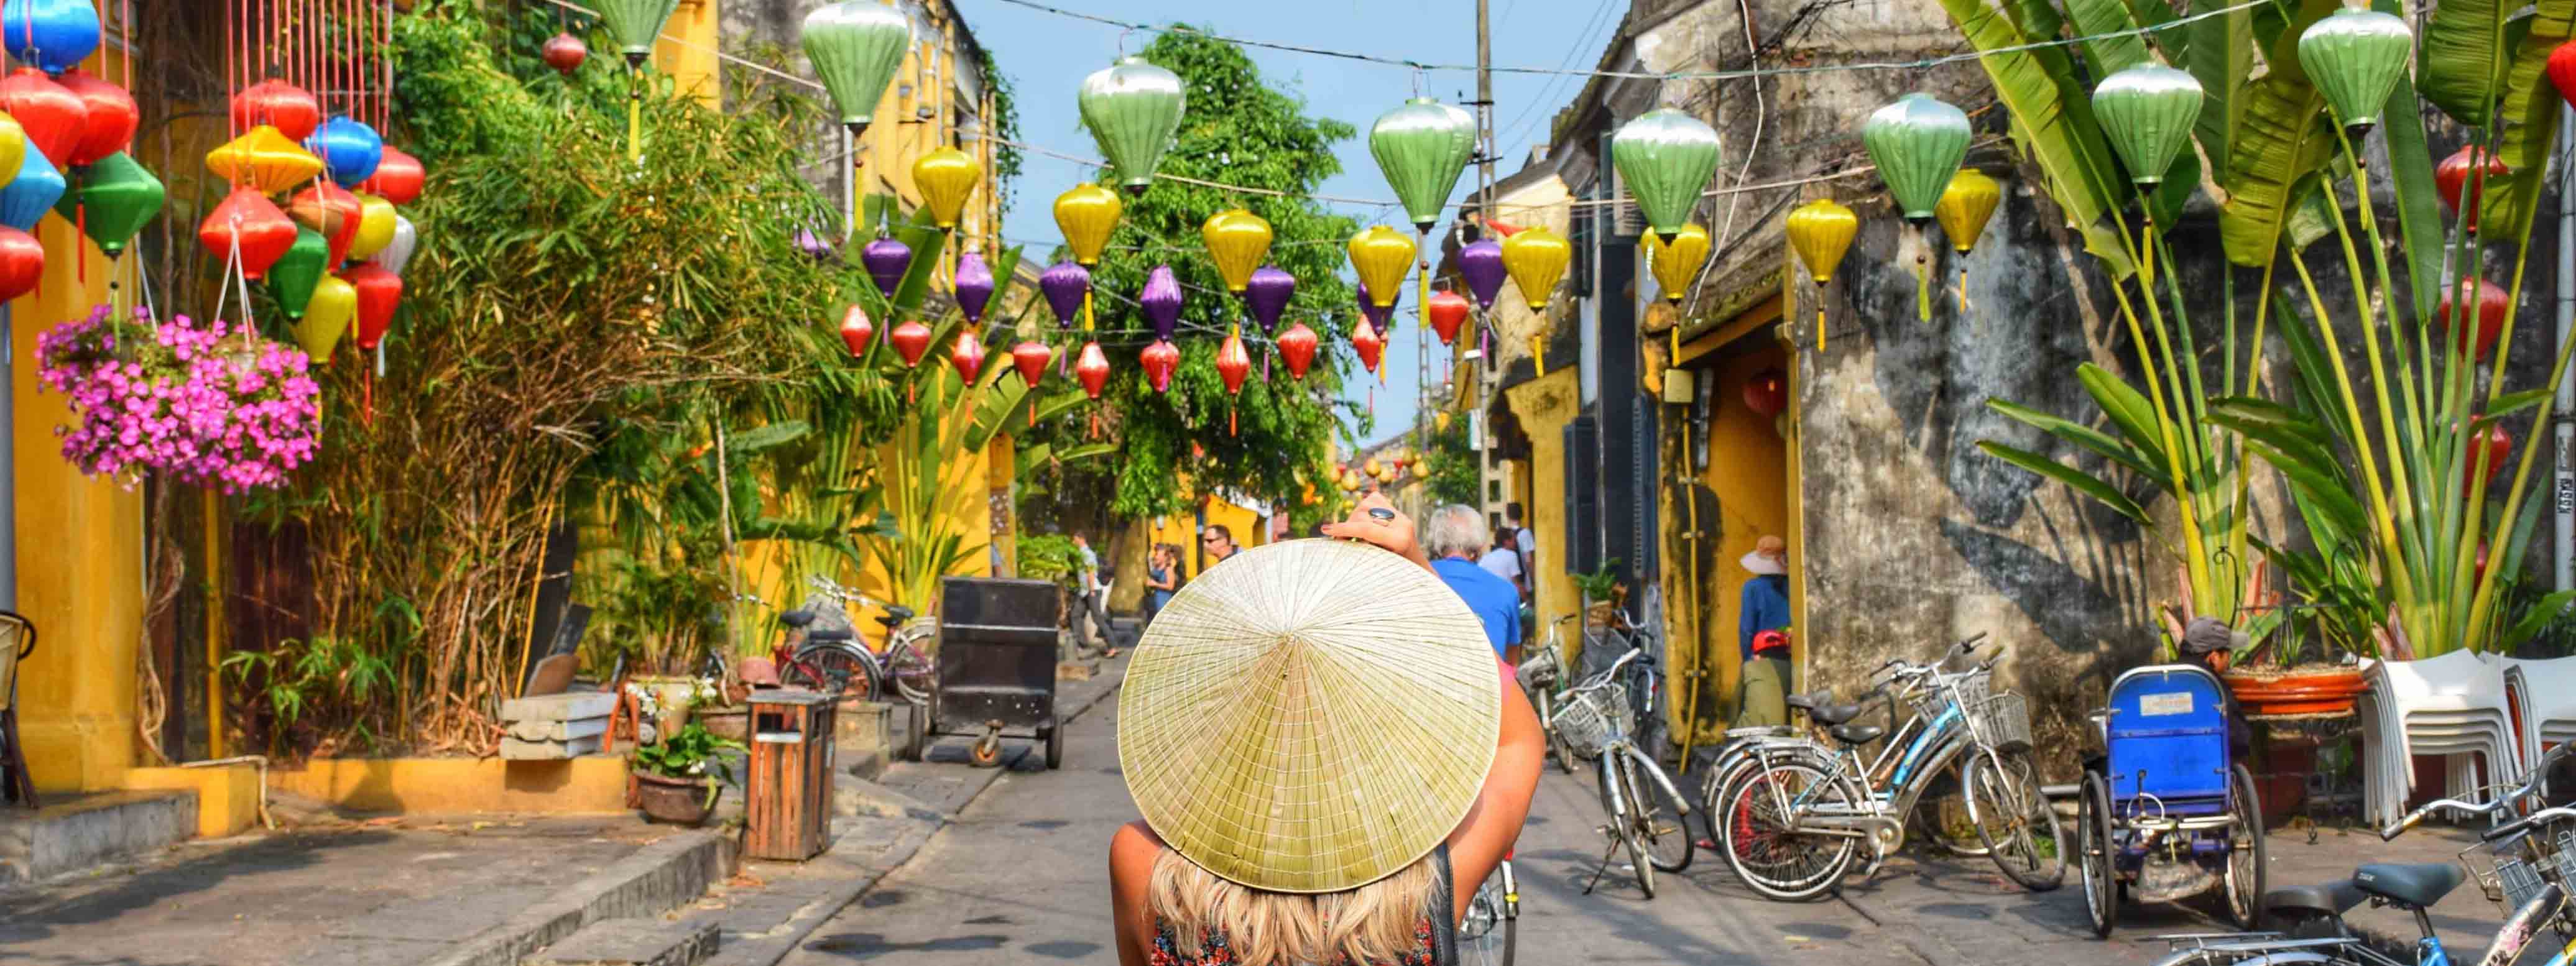 Cidade antiga de Hoi An, no centro do Vietnã | Créditos: Lala Rebelo